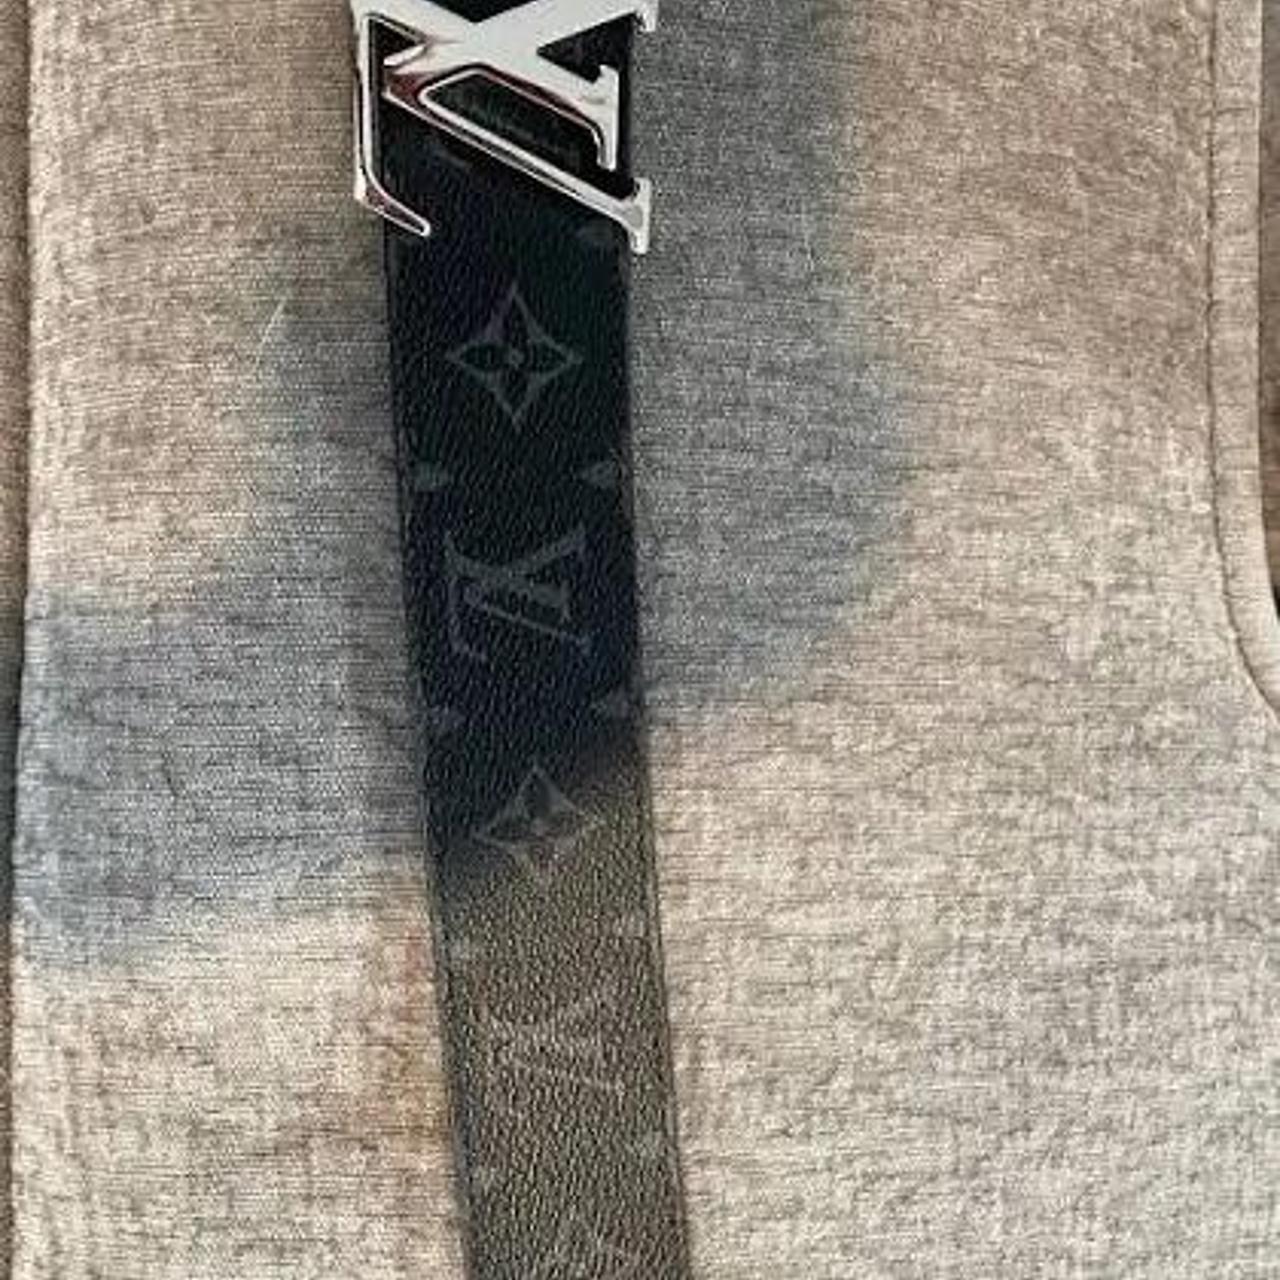 Louis Vuitton LV Initiales 35MM Reverible Belt